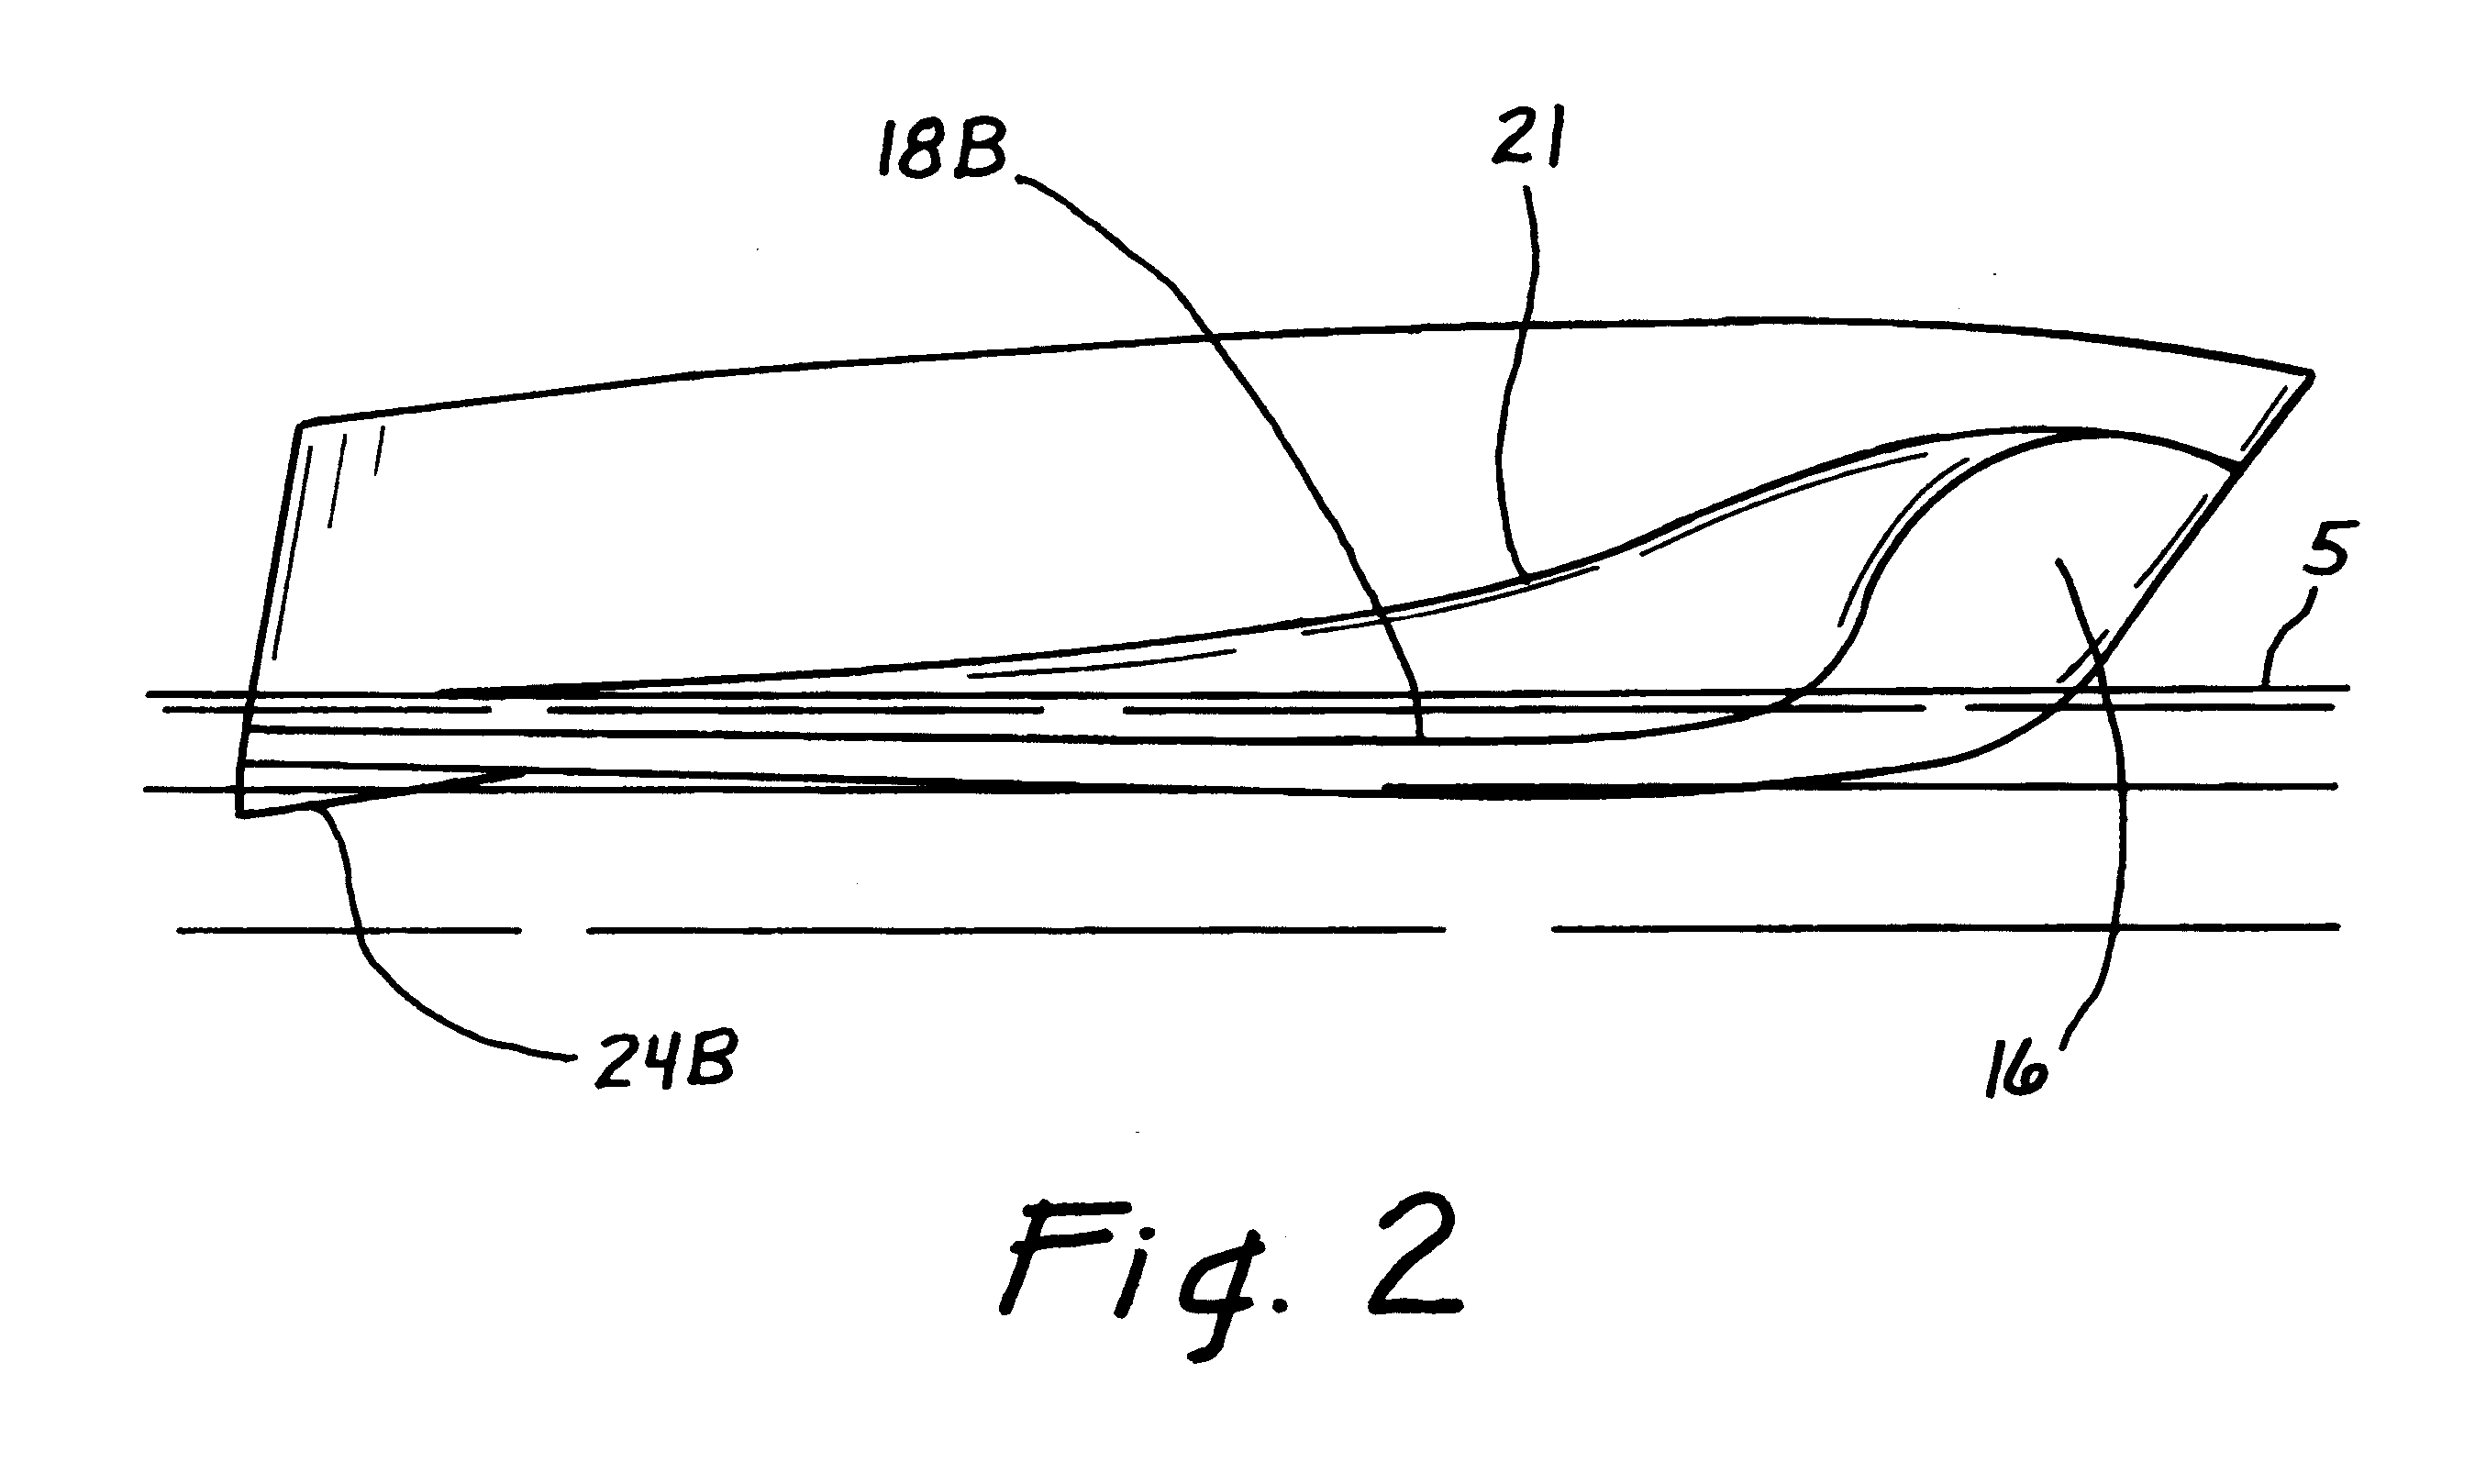 M-shaped boat hull